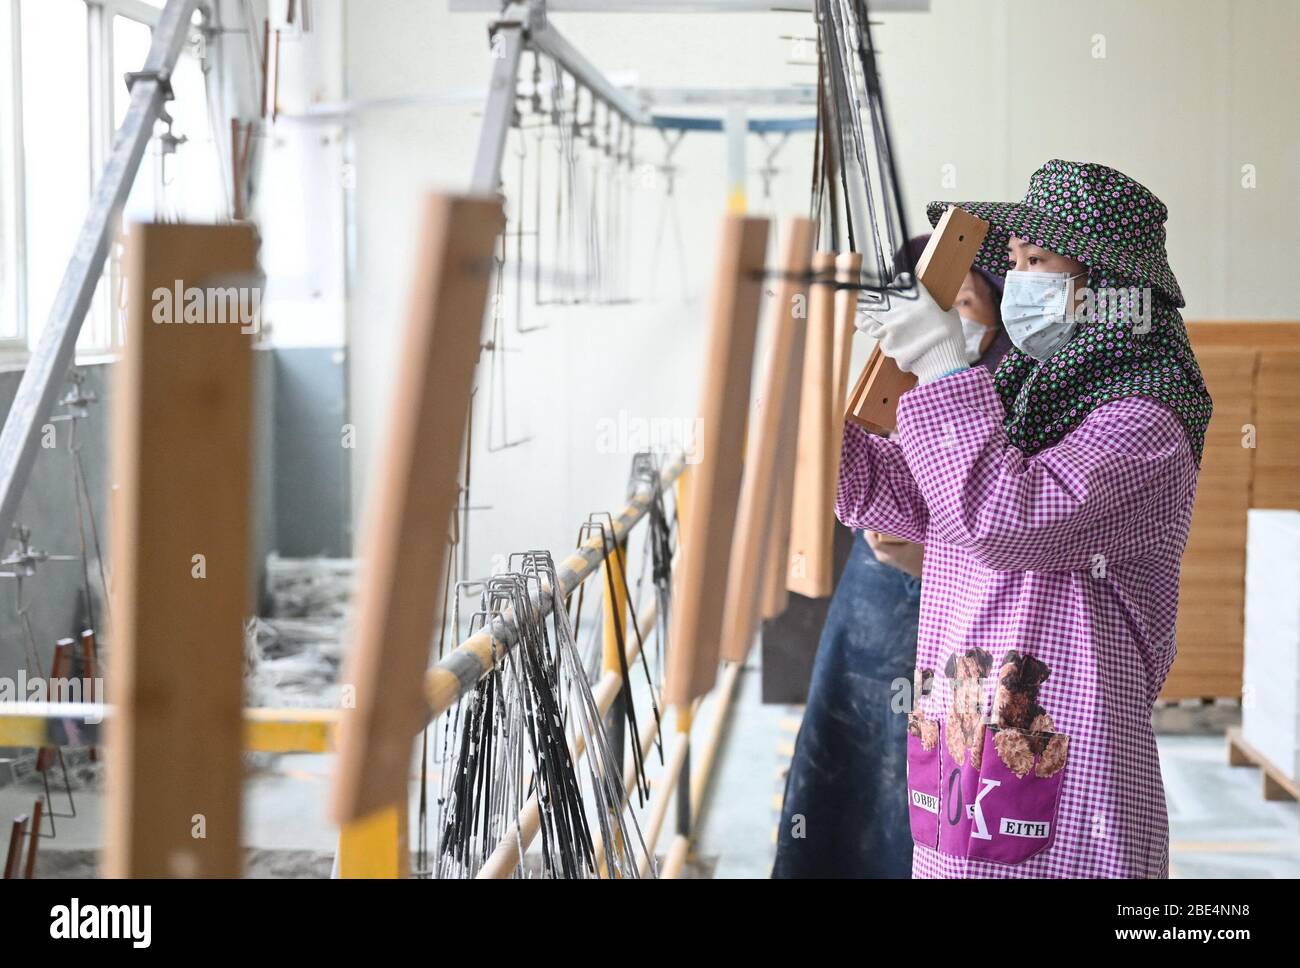 Zhenghe, Cina. 11 Aprile 2020. I lavoratori fanno prodotti di bambù in uno stabilimento nella contea di Zhenghe, nella provincia del Fujian, nel sud-est della Cina, il 11 aprile 2020. Conosciuta come una 'città artigianale di bambù in Cina', Zhenghe County è stata attivamente promuovere lo sviluppo dell'industria di bambù con la sua foresta di bambù 460,000 mu (circa 30,667 ettari). Oggi, ci sono circa 220 imprese con più di 50,000 persone che lavorano in bambù industrie. Nel 2019, il valore totale della produzione di bambù nella contea ha raggiunto 4.379 miliardi di yuan (circa 0.62 miliardi di US Credit: Xinhua/Alamy Live News Foto Stock